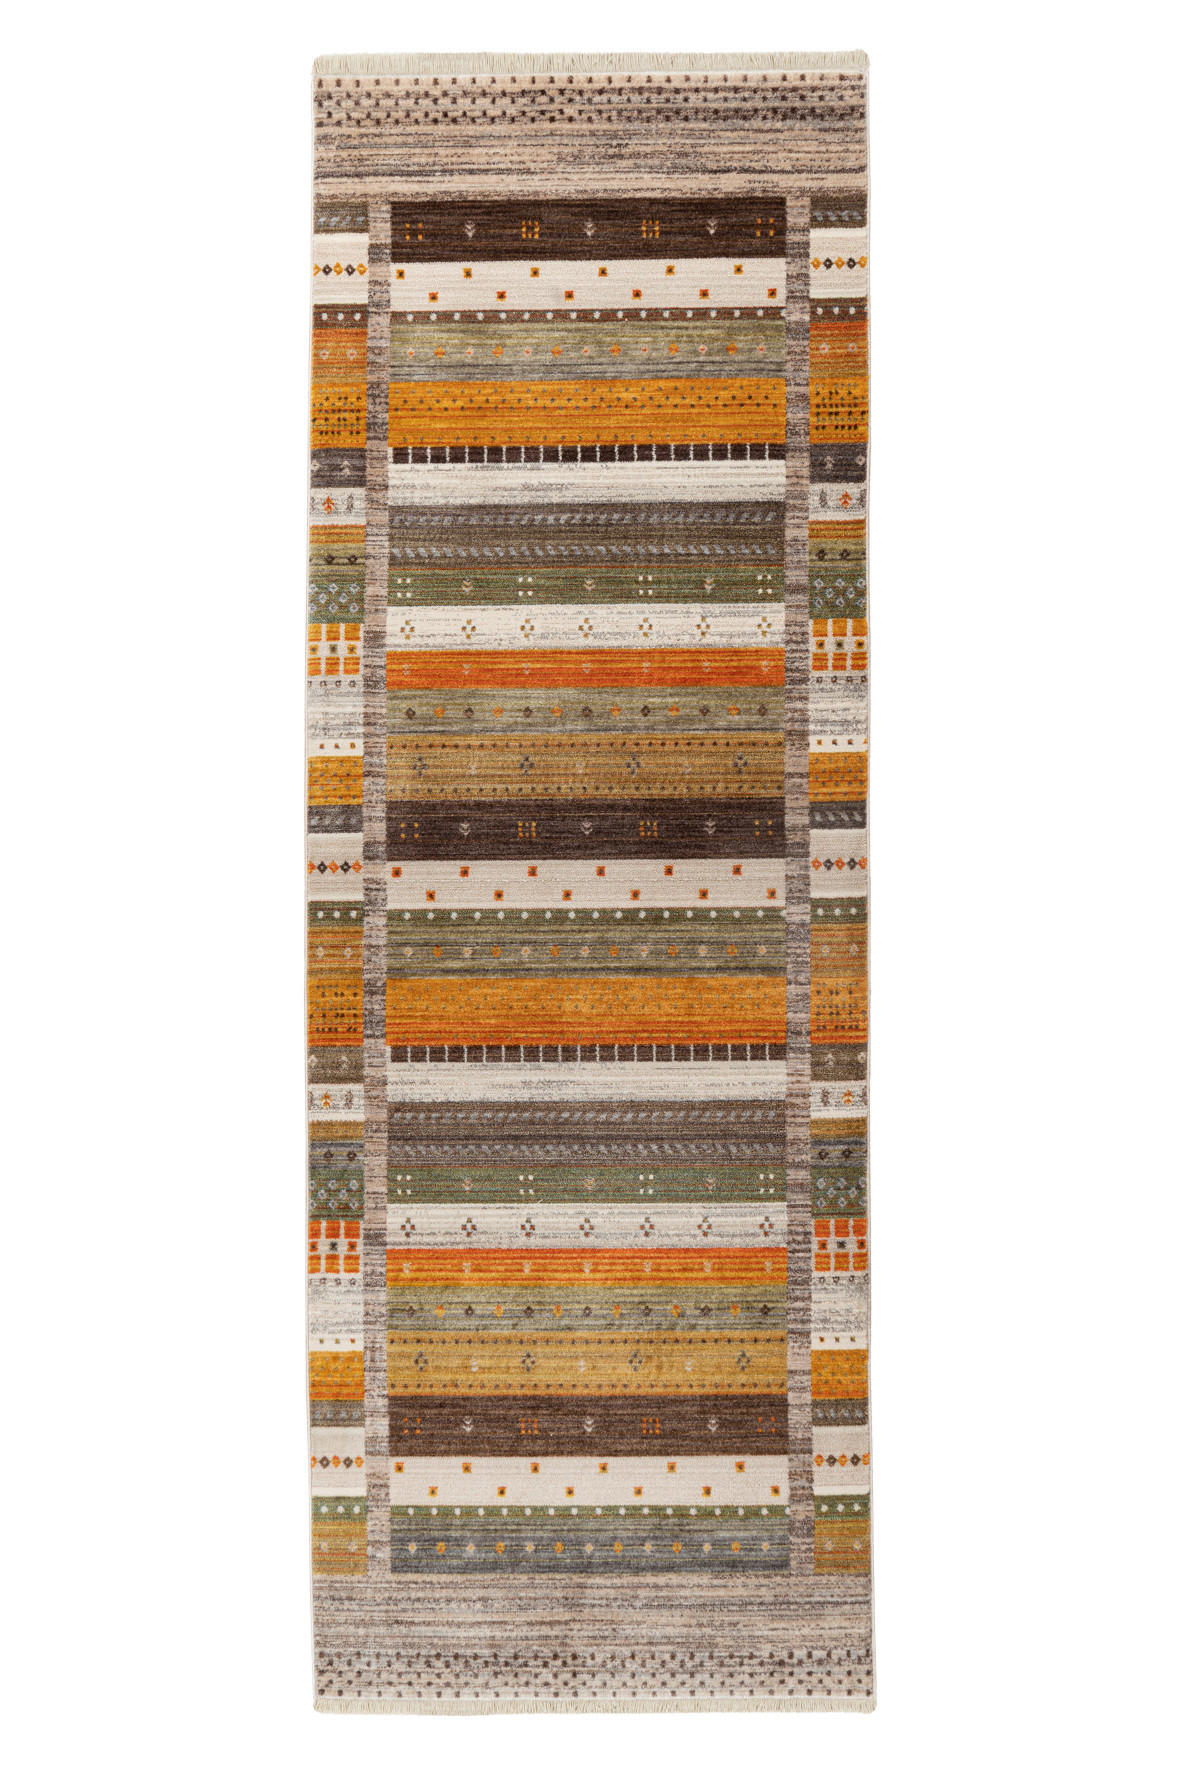 LÄUFER  80/235 cm  Grün, Multicolor, Orange, Beige  - Beige/Multicolor, Design, Textil (80/235cm) - Novel